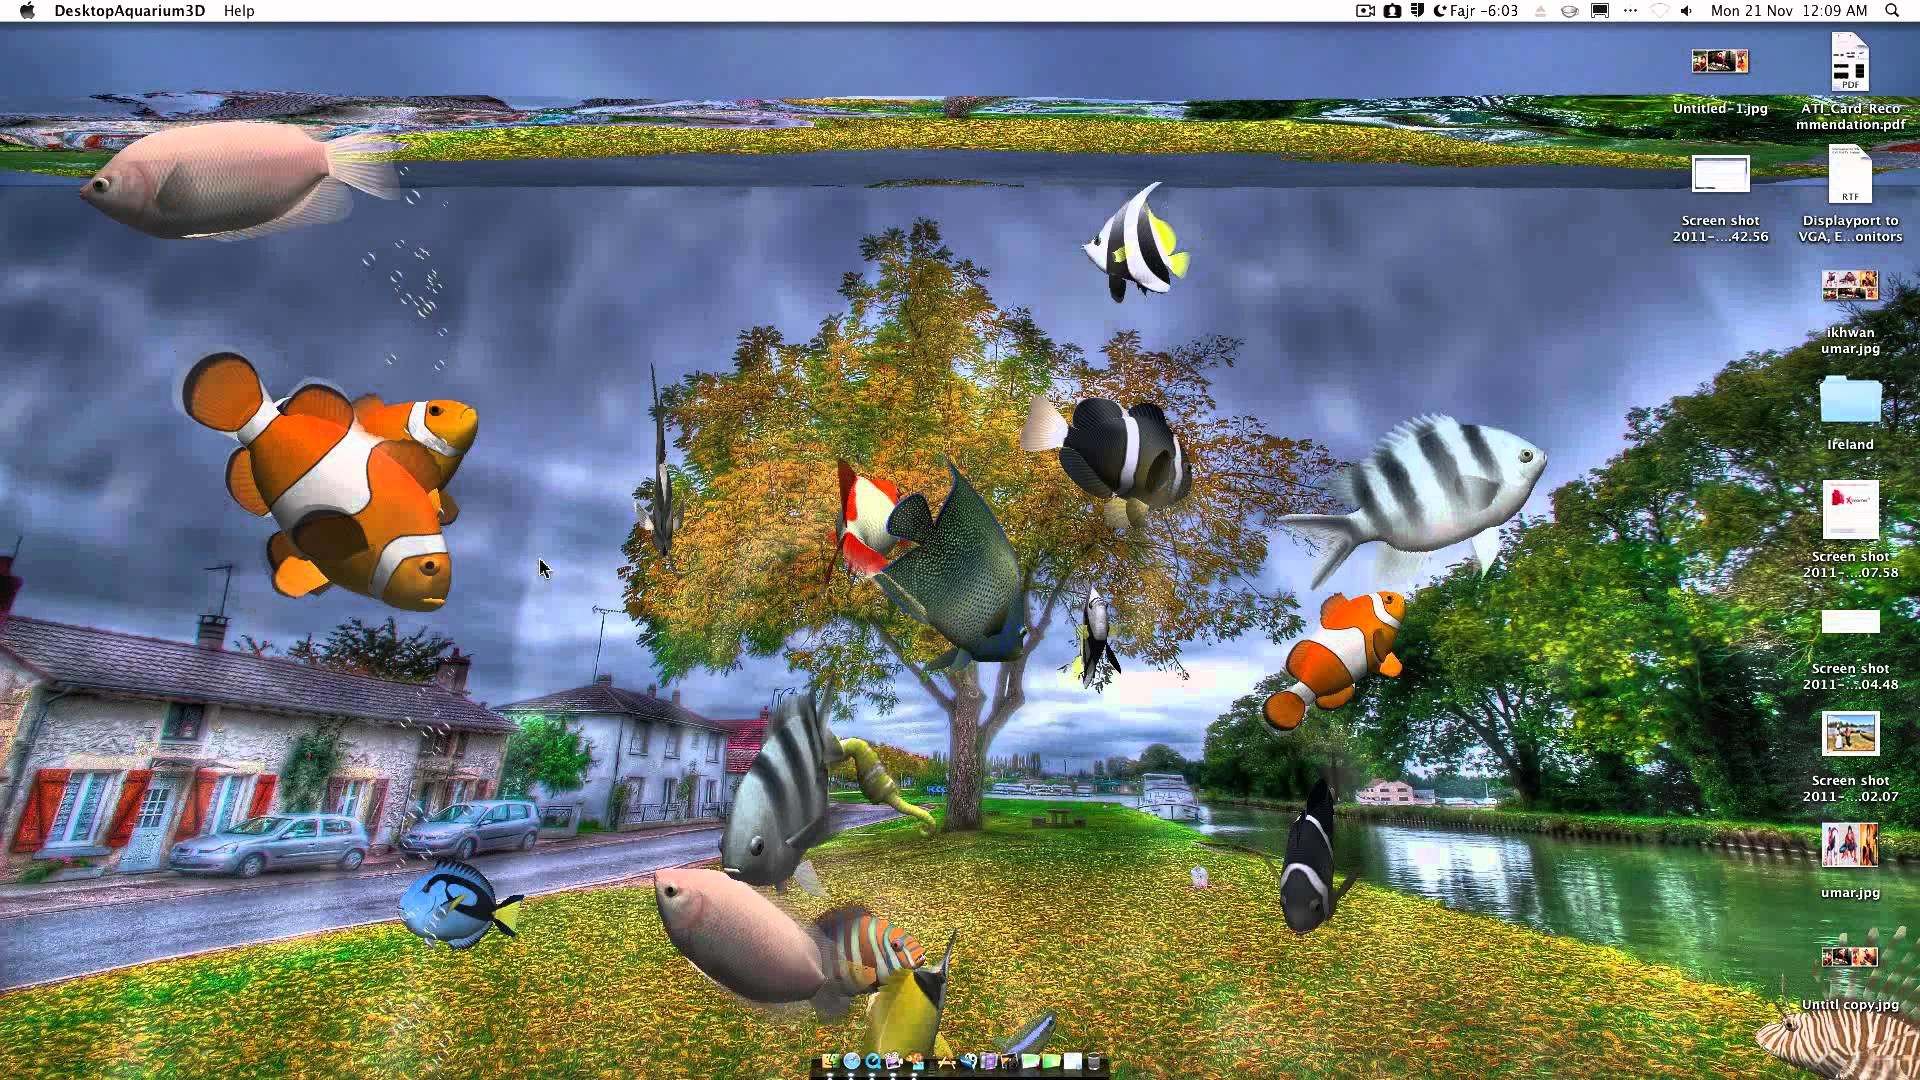 Desktop Aquarium 3D Live Wallpaper on Imac – YouTube